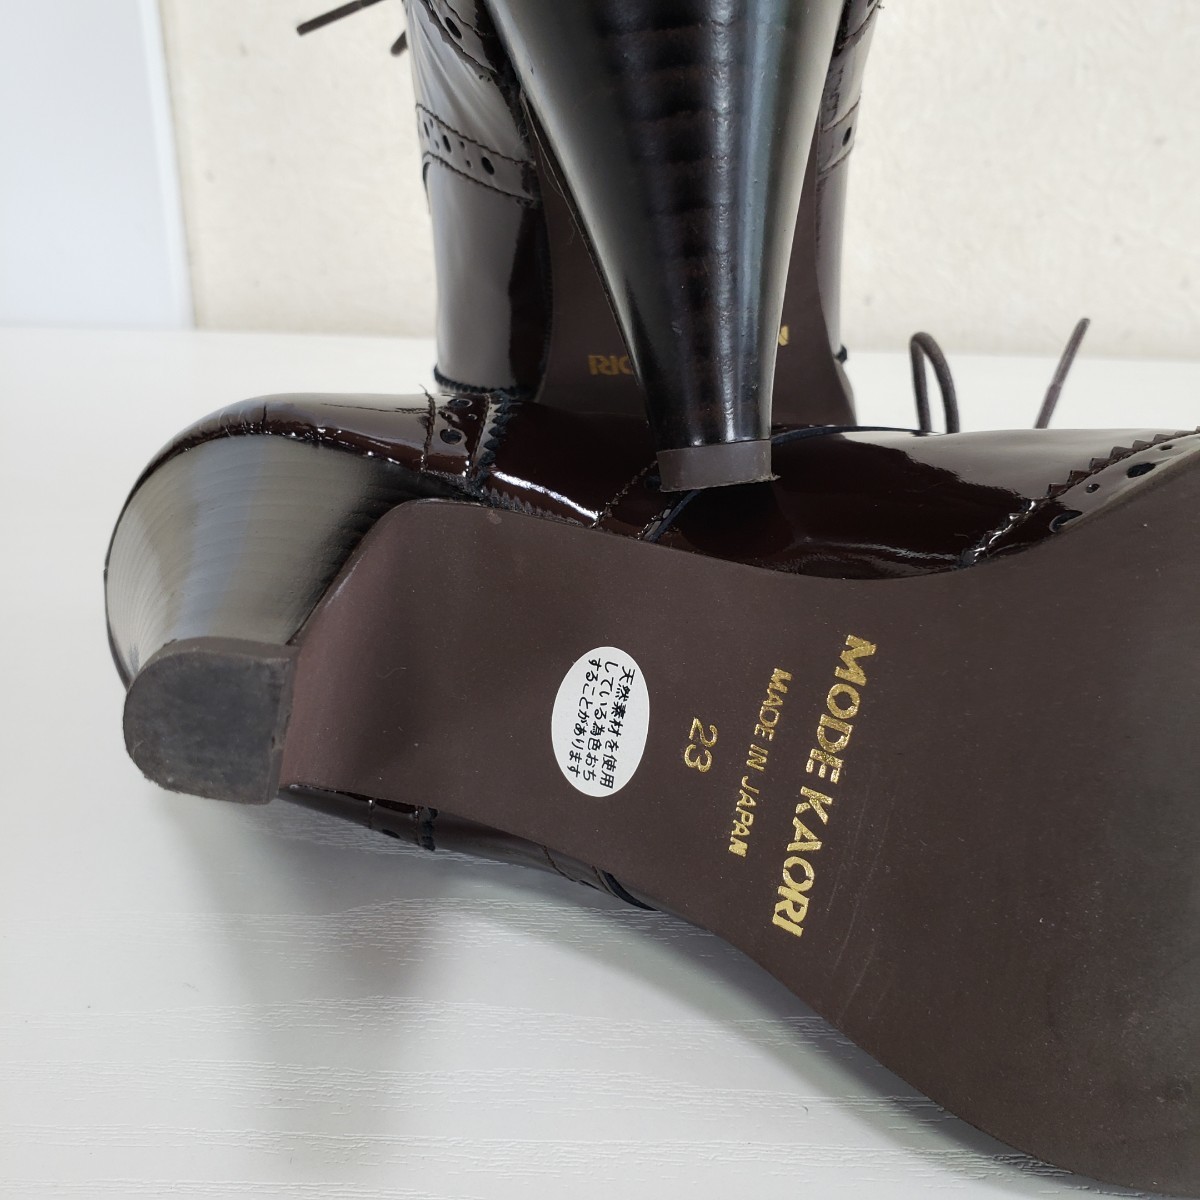  первоклассный товар *MODE KAORI режим kaolipa палатка кожа эмаль гонки выше туфли-лодочки ботиночки - обувь (23.0cm) чай цвет Brown 